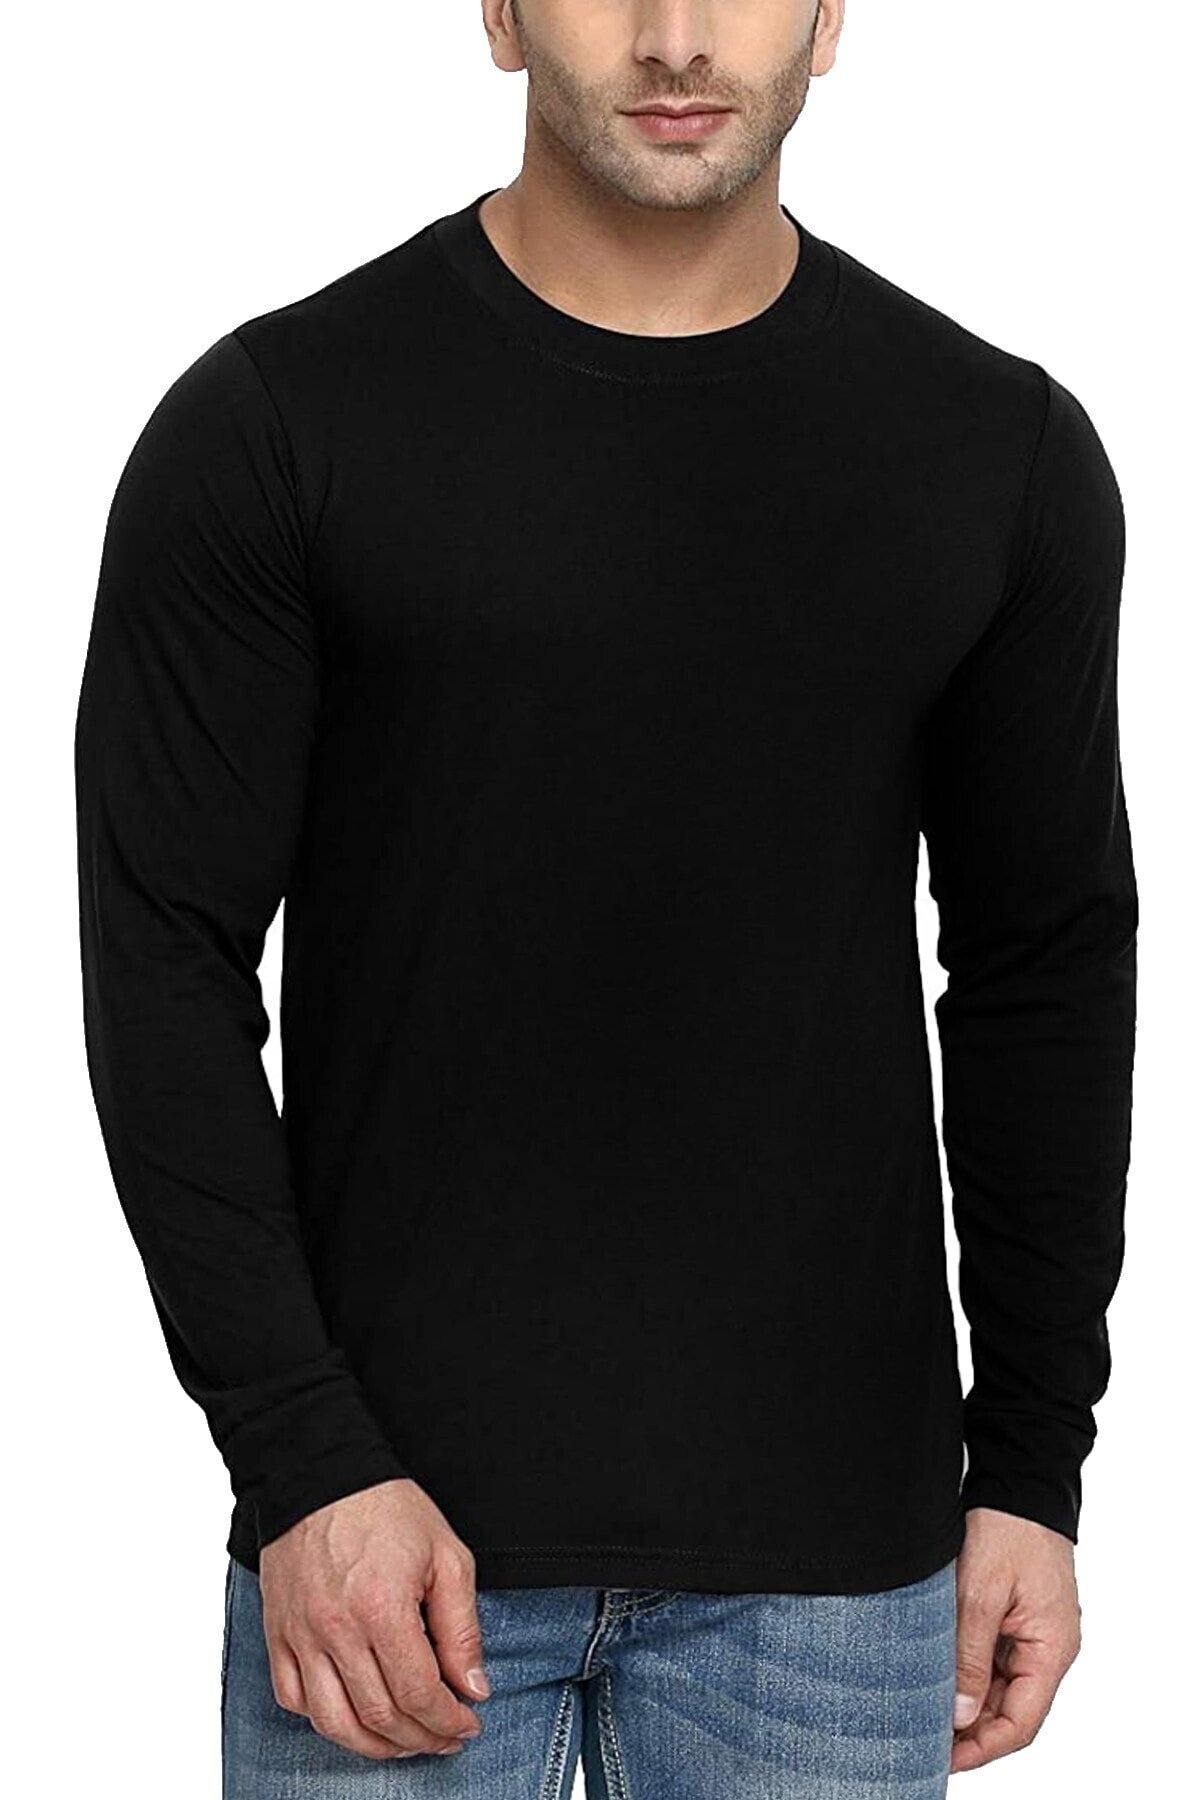 Düz, Baskısız Siyah Uzun Kollu Erkek T-shirt 2'li Eko Paket